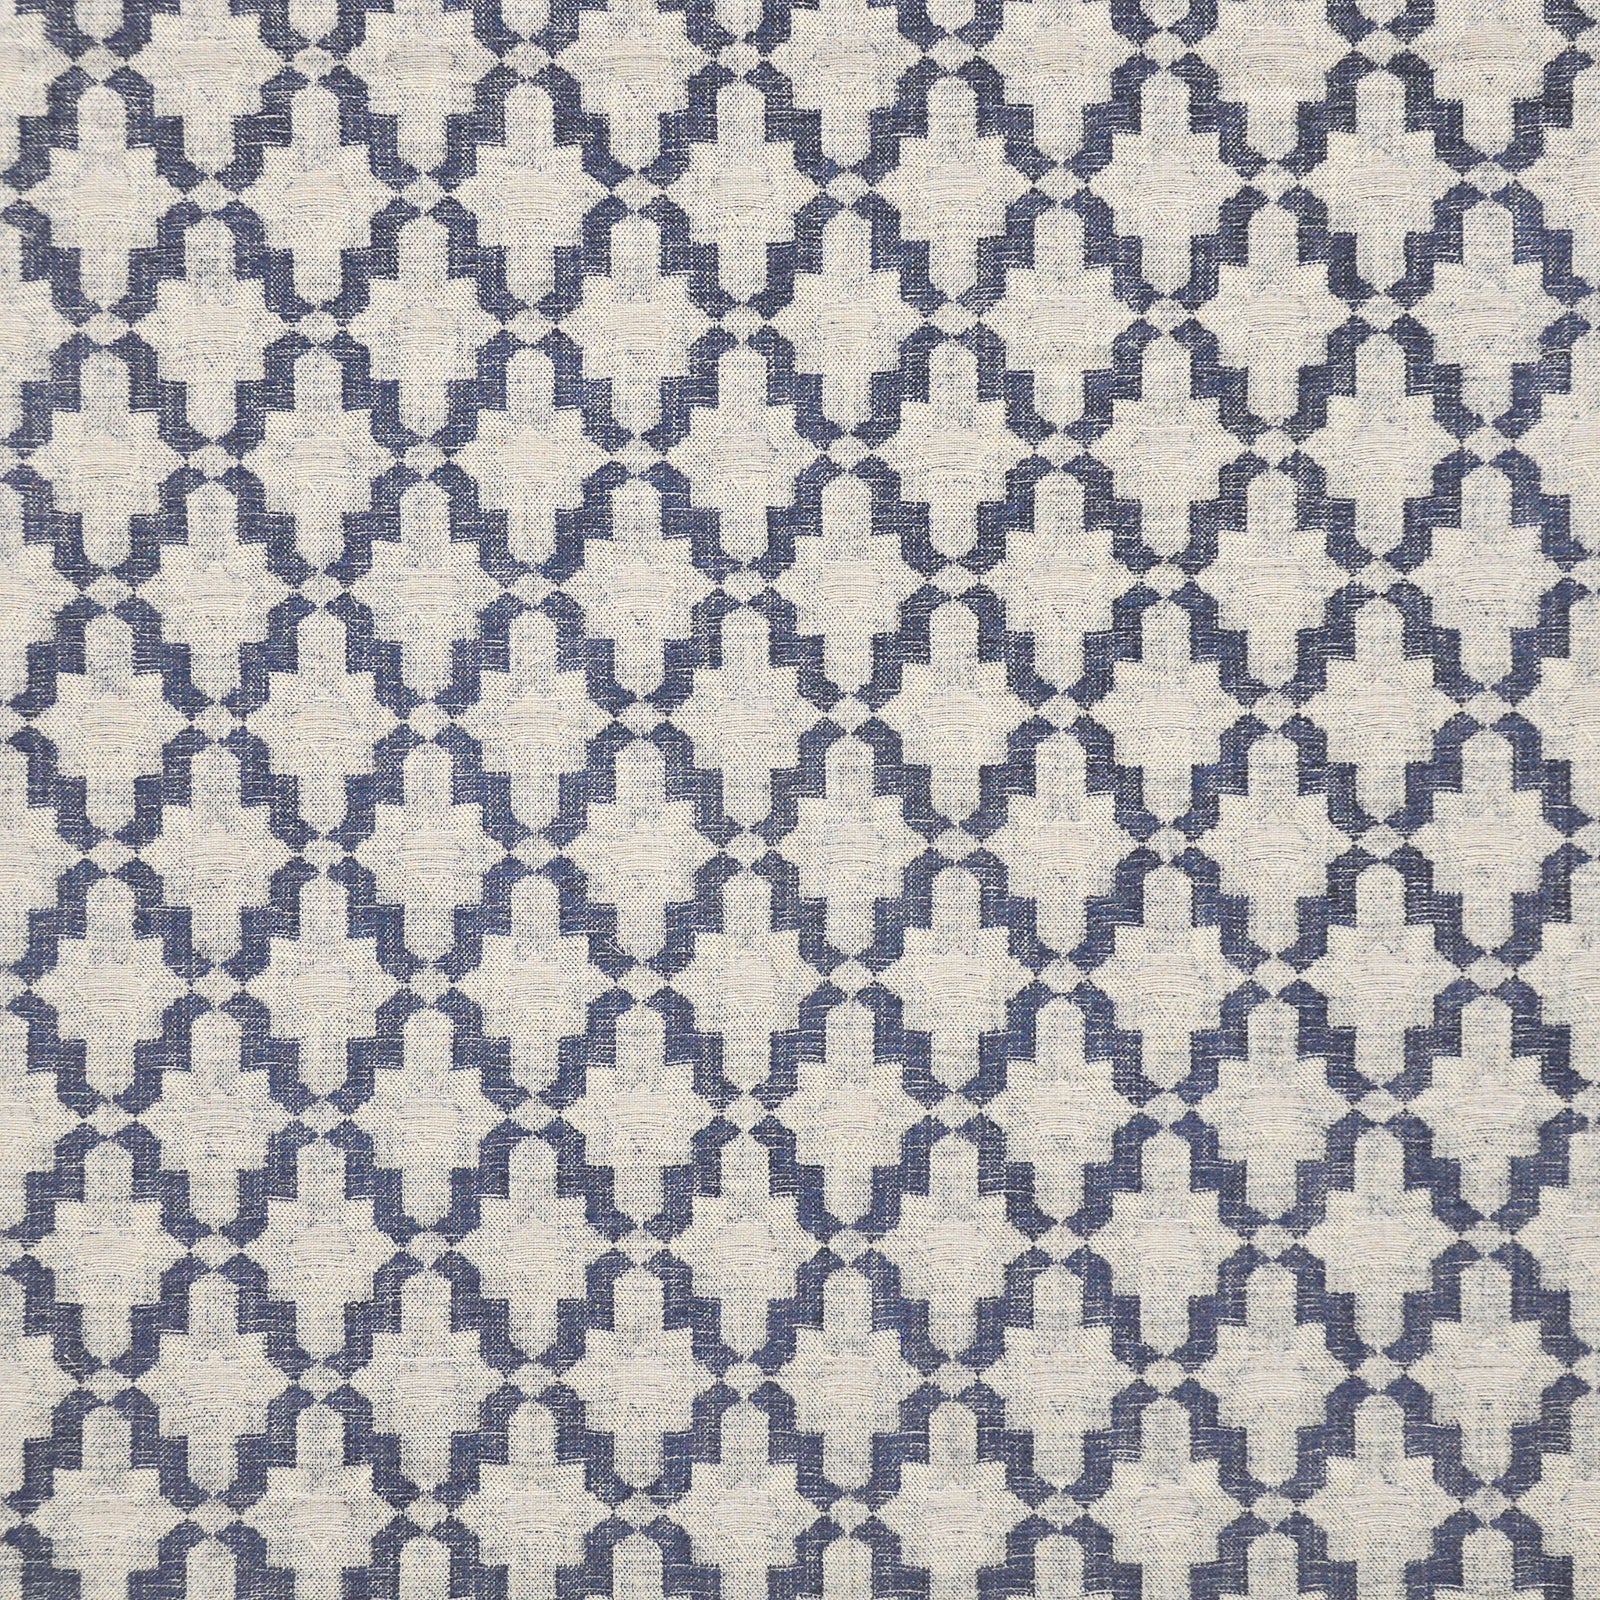 Maxwell Fabric CFU908  Caterfoil Turkish Tile